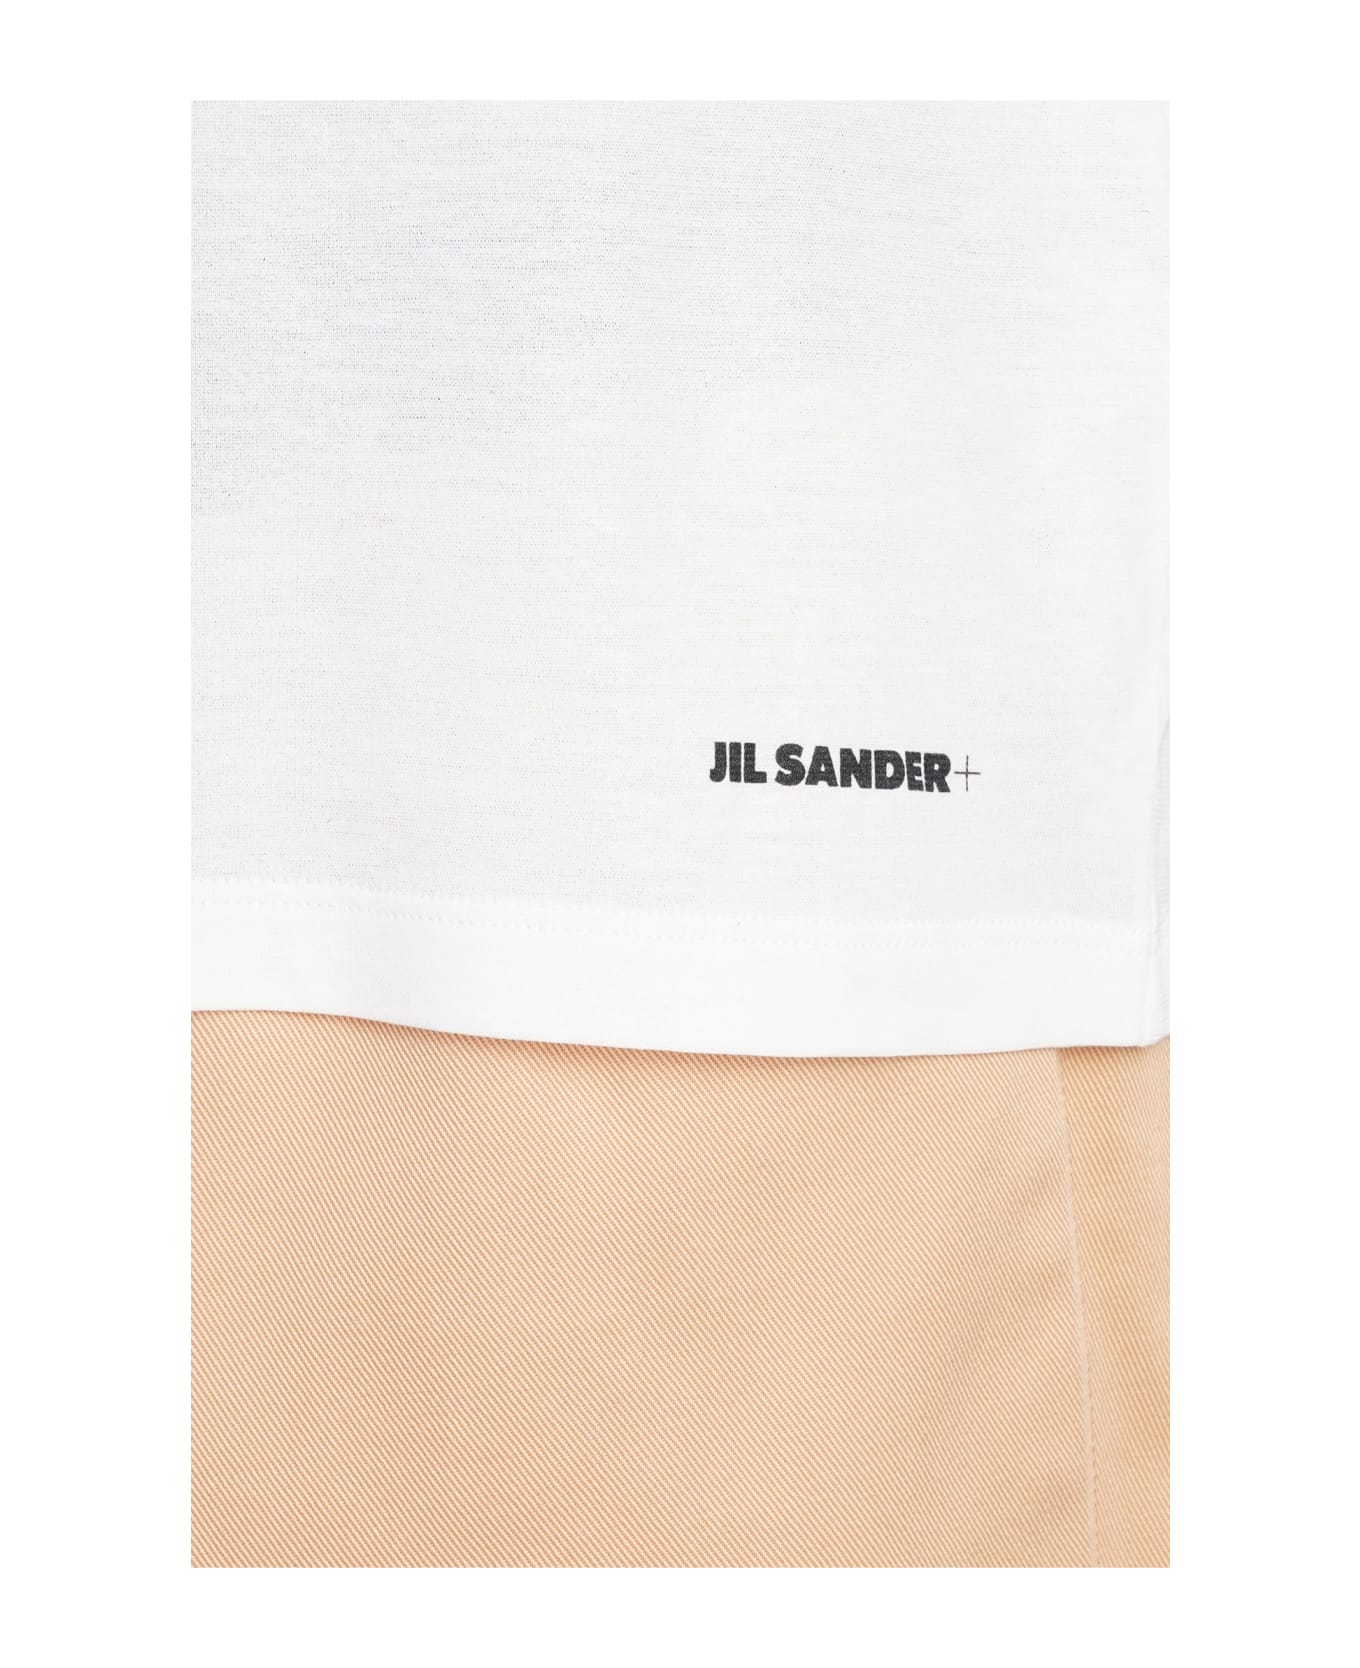 Jil Sander White Cotton T-shirt - white